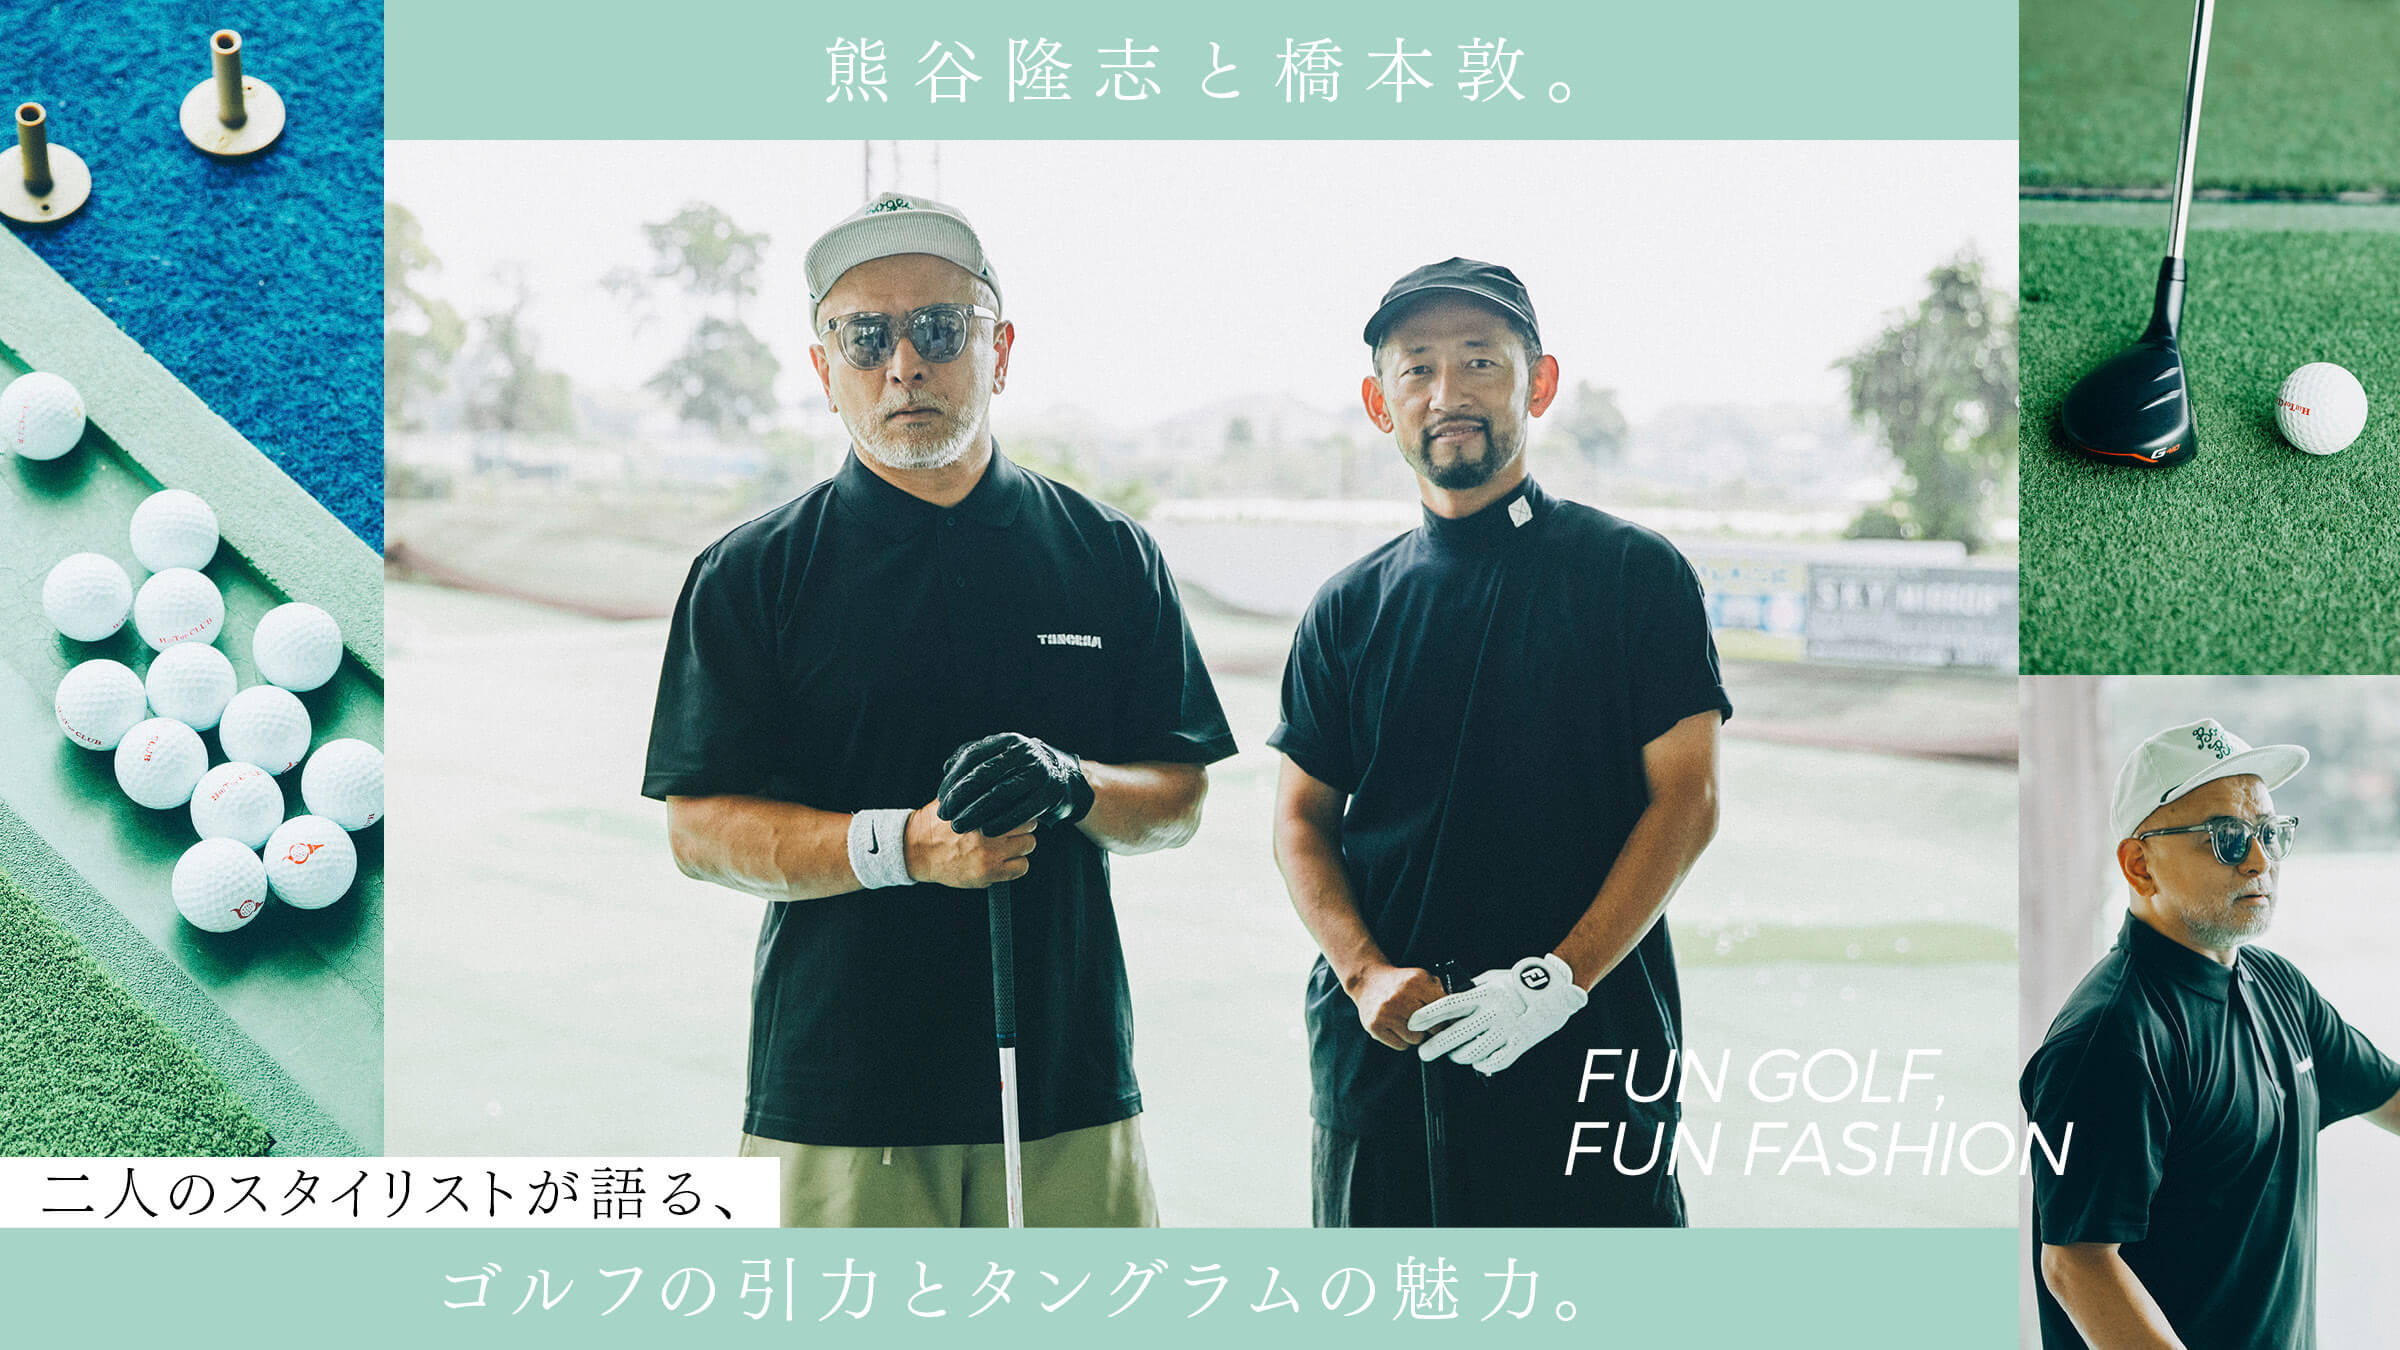 熊谷隆志と橋本敦。二人のスタイリストが語る、ゴルフの引力と